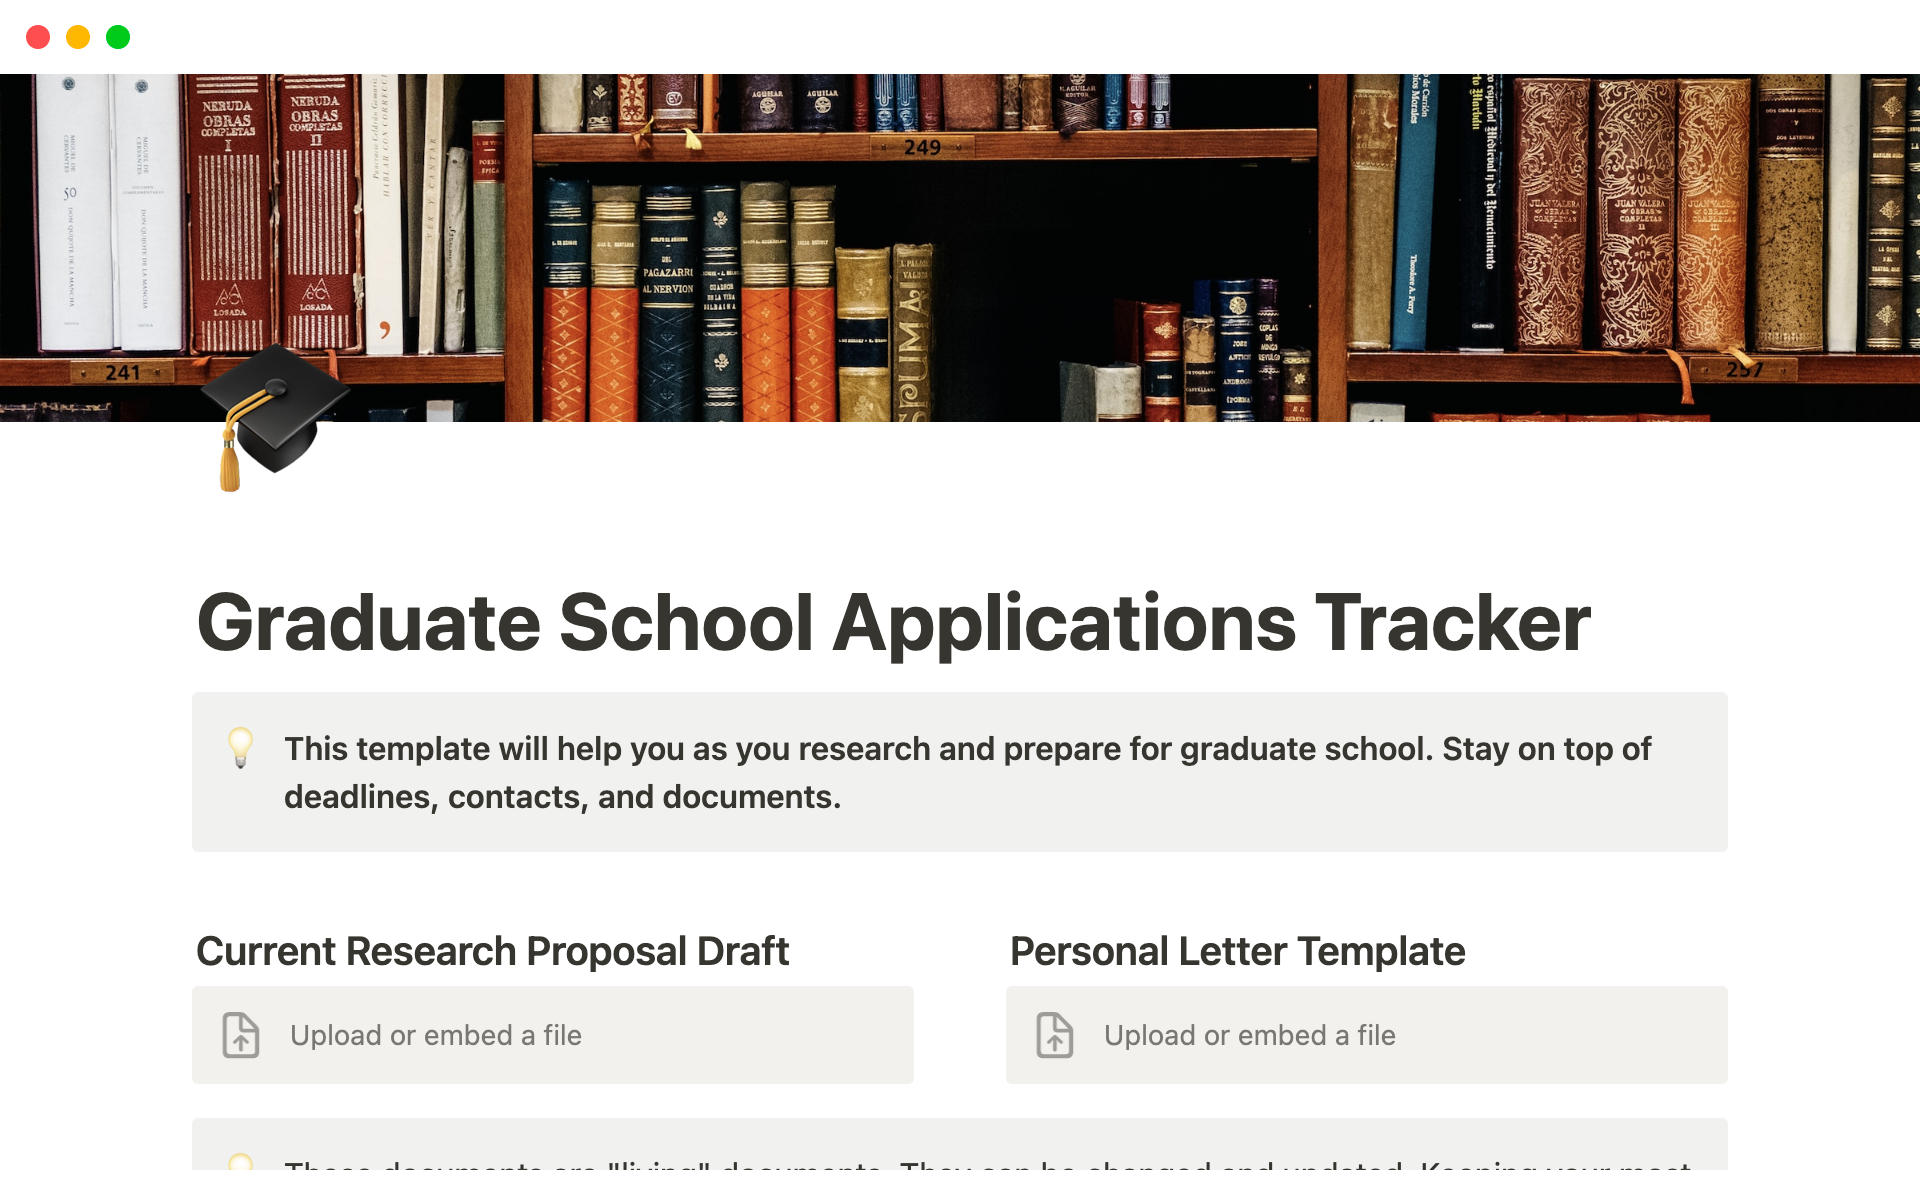 Uma prévia do modelo para Graduate School Applications Tracker